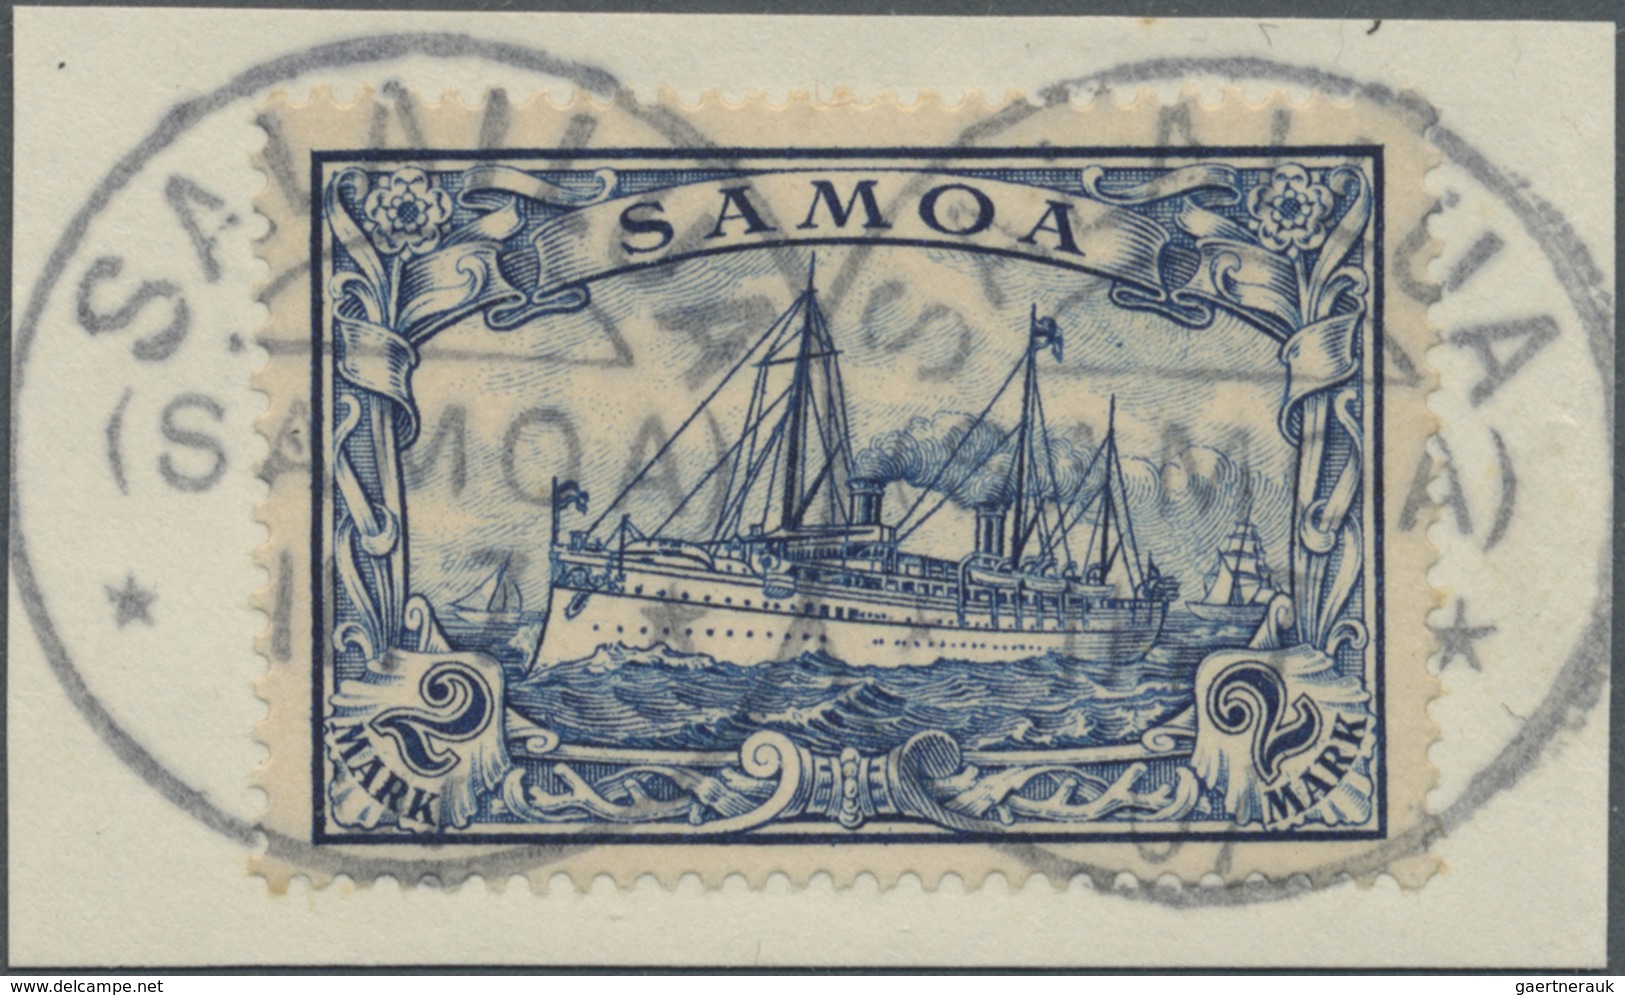 Brfst Deutsche Kolonien - Samoa - Stempel: Perfektes Luxus-Briefstück 2 Mark Mit Guten Stempeln SALAILUA - Samoa